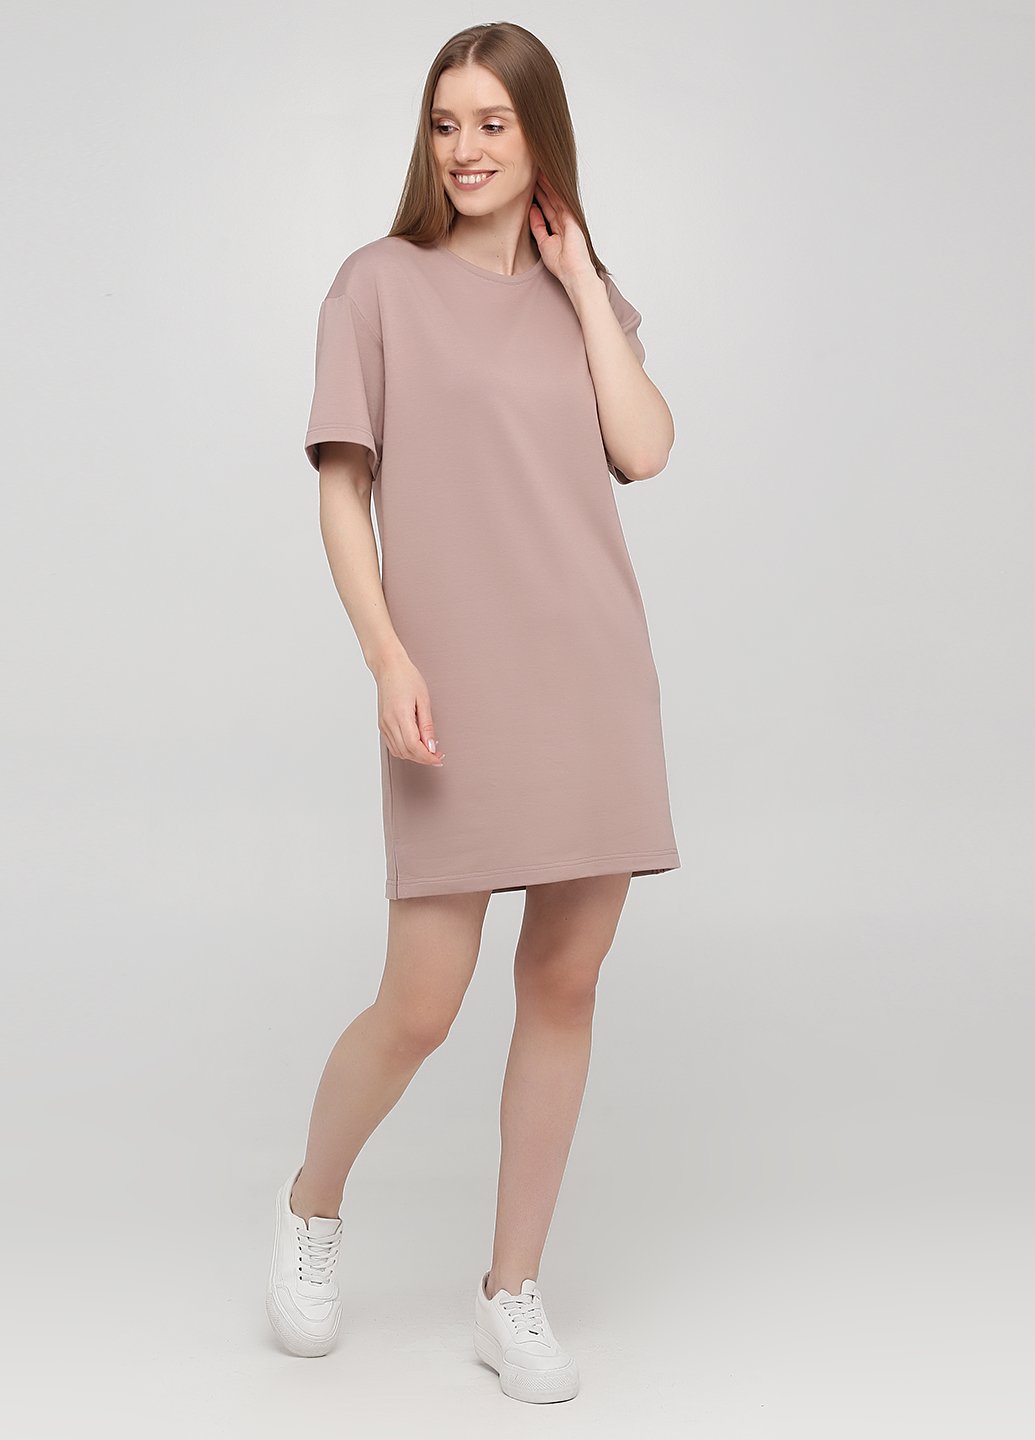 Купить Оверсайз платье Merlini Нанси 700000013 - Пудровый, 42-44 в интернет-магазине